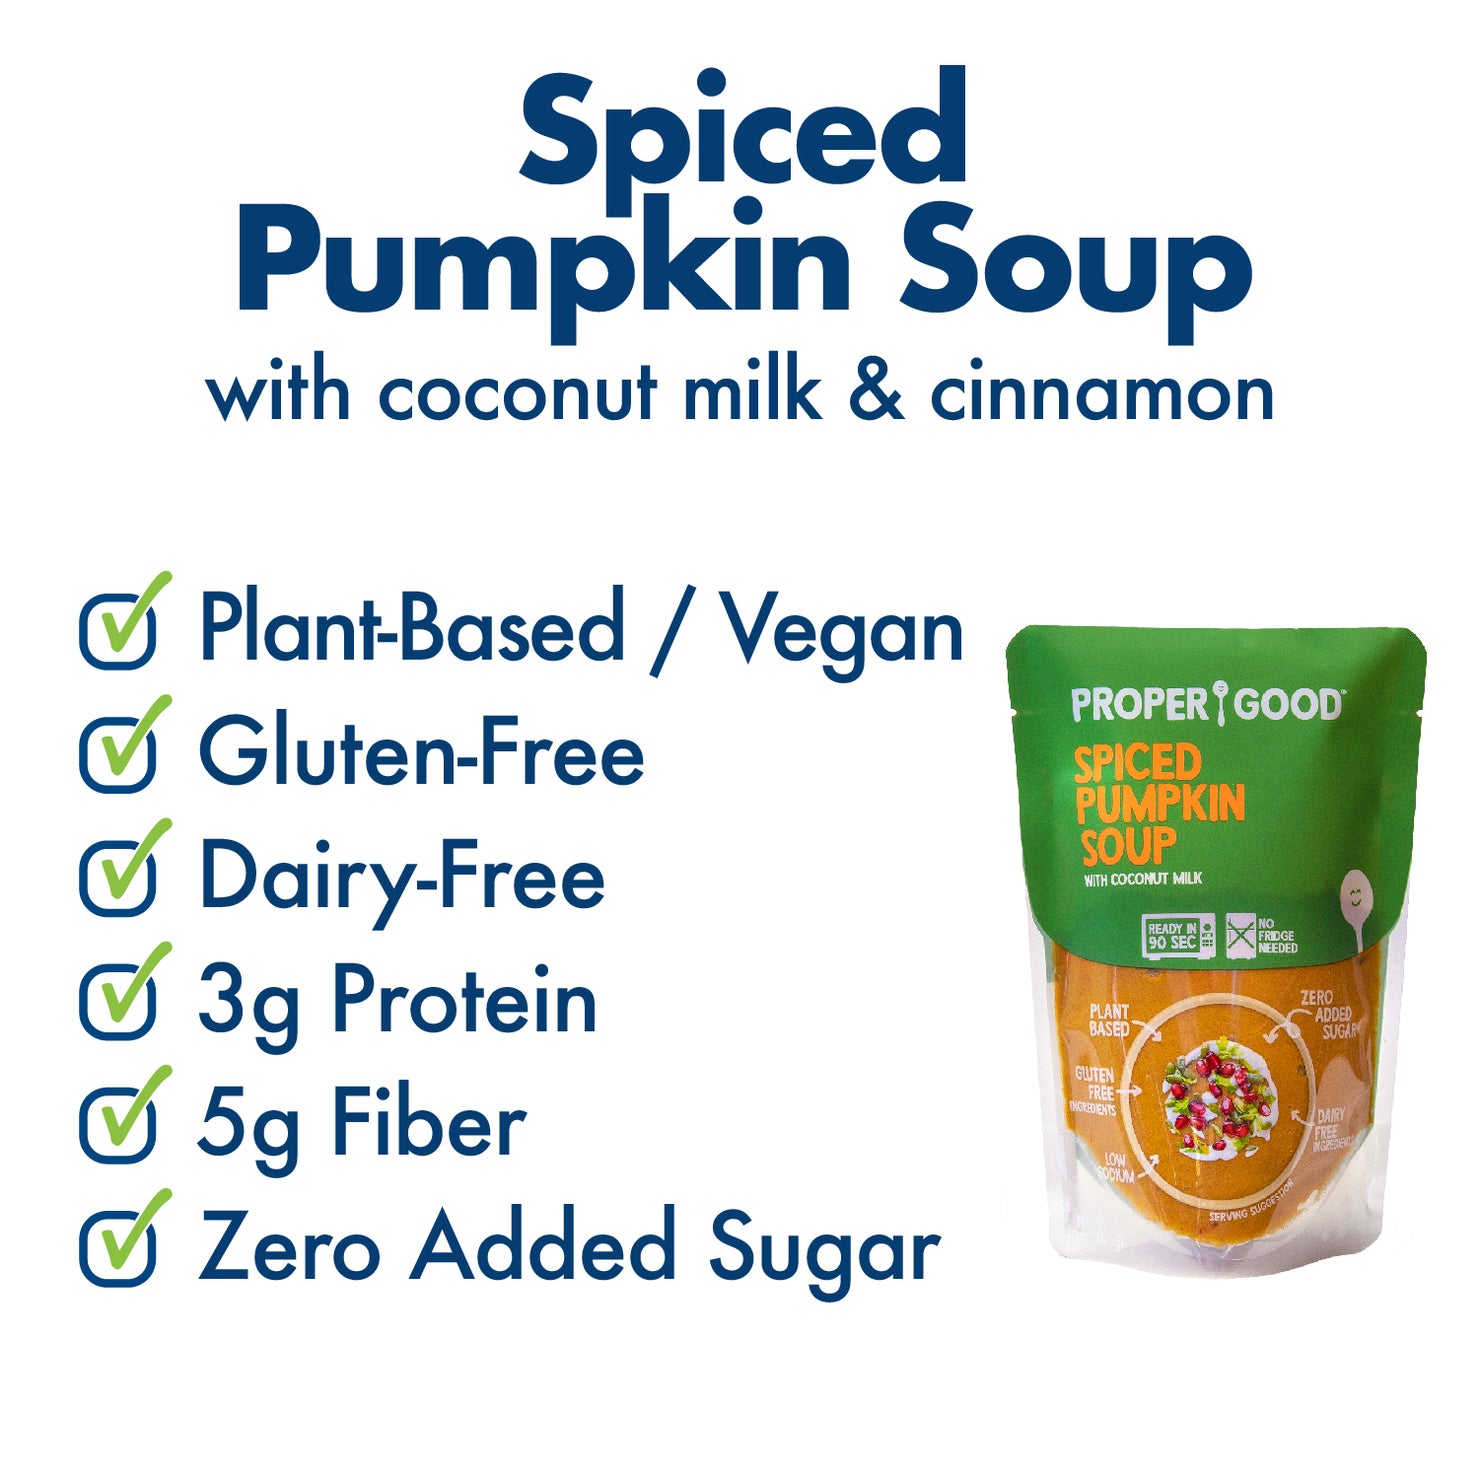 Spiced Pumpkin Soup Benefits - Eat Proper Good